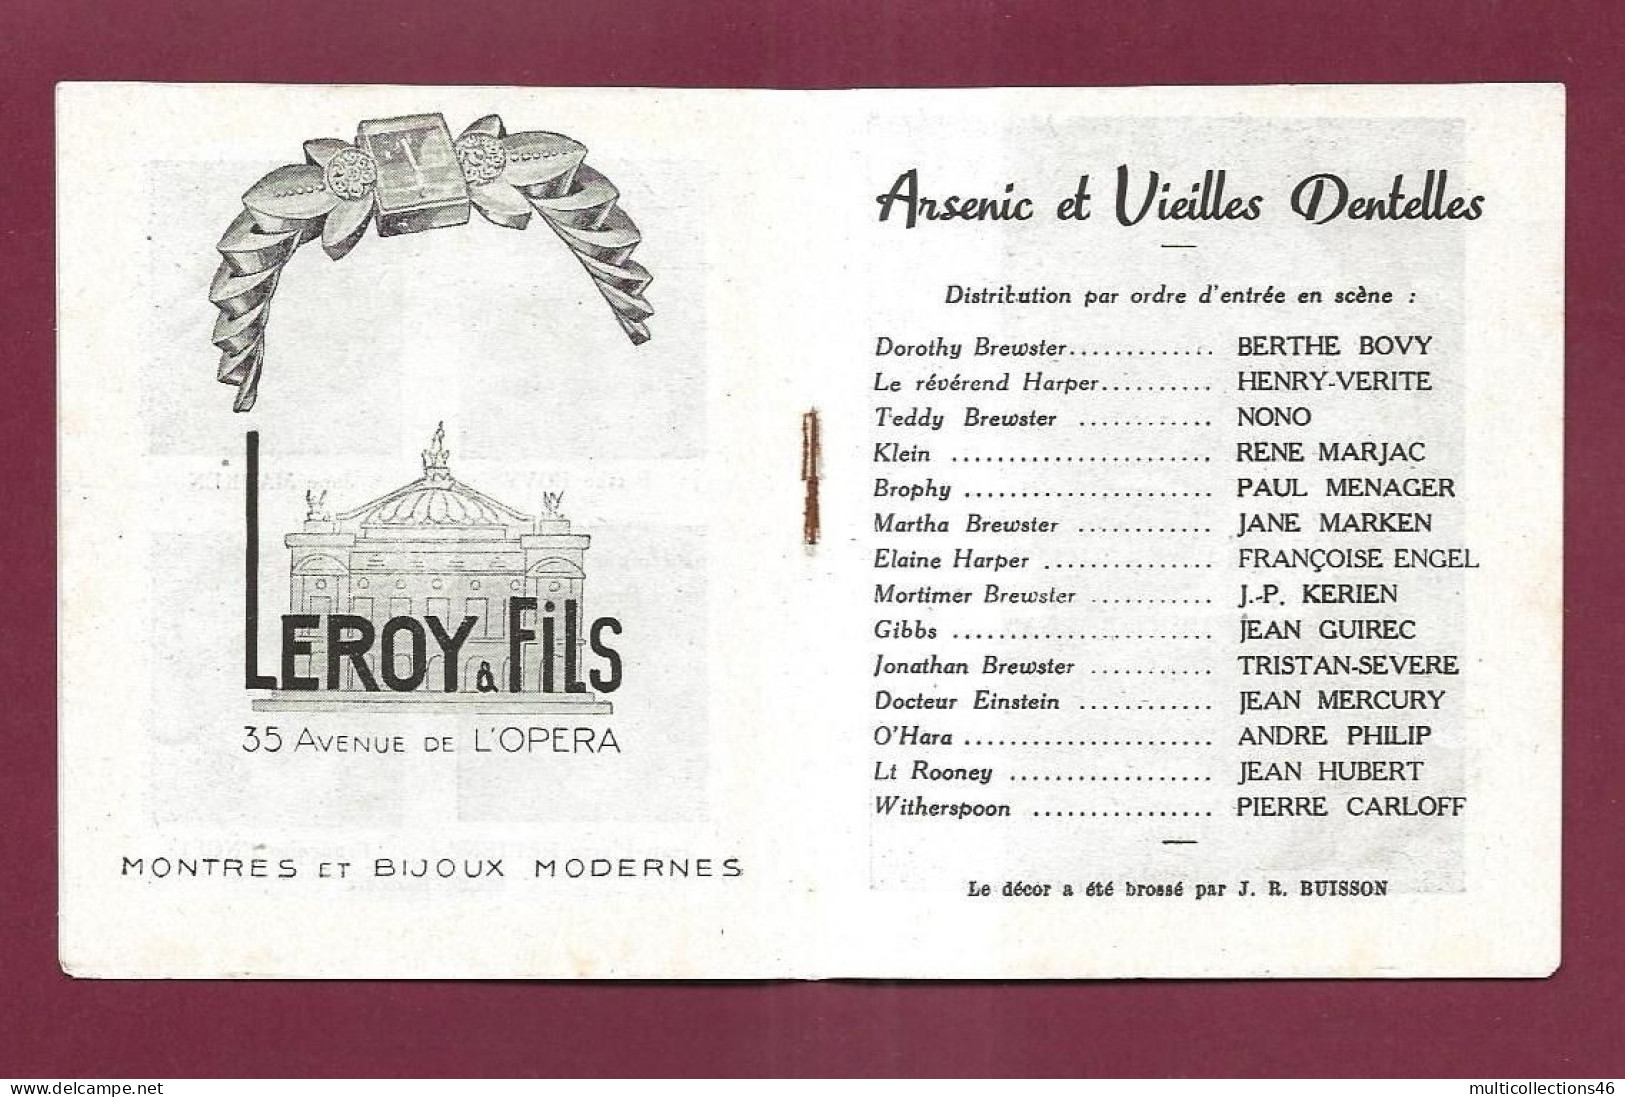 150524 - PROGRAMME THEATRE MARIGNY 1945 46 - Arsenic Et Vieilles Dentelles - Bovy Nono Marjac Vérité - Programmes